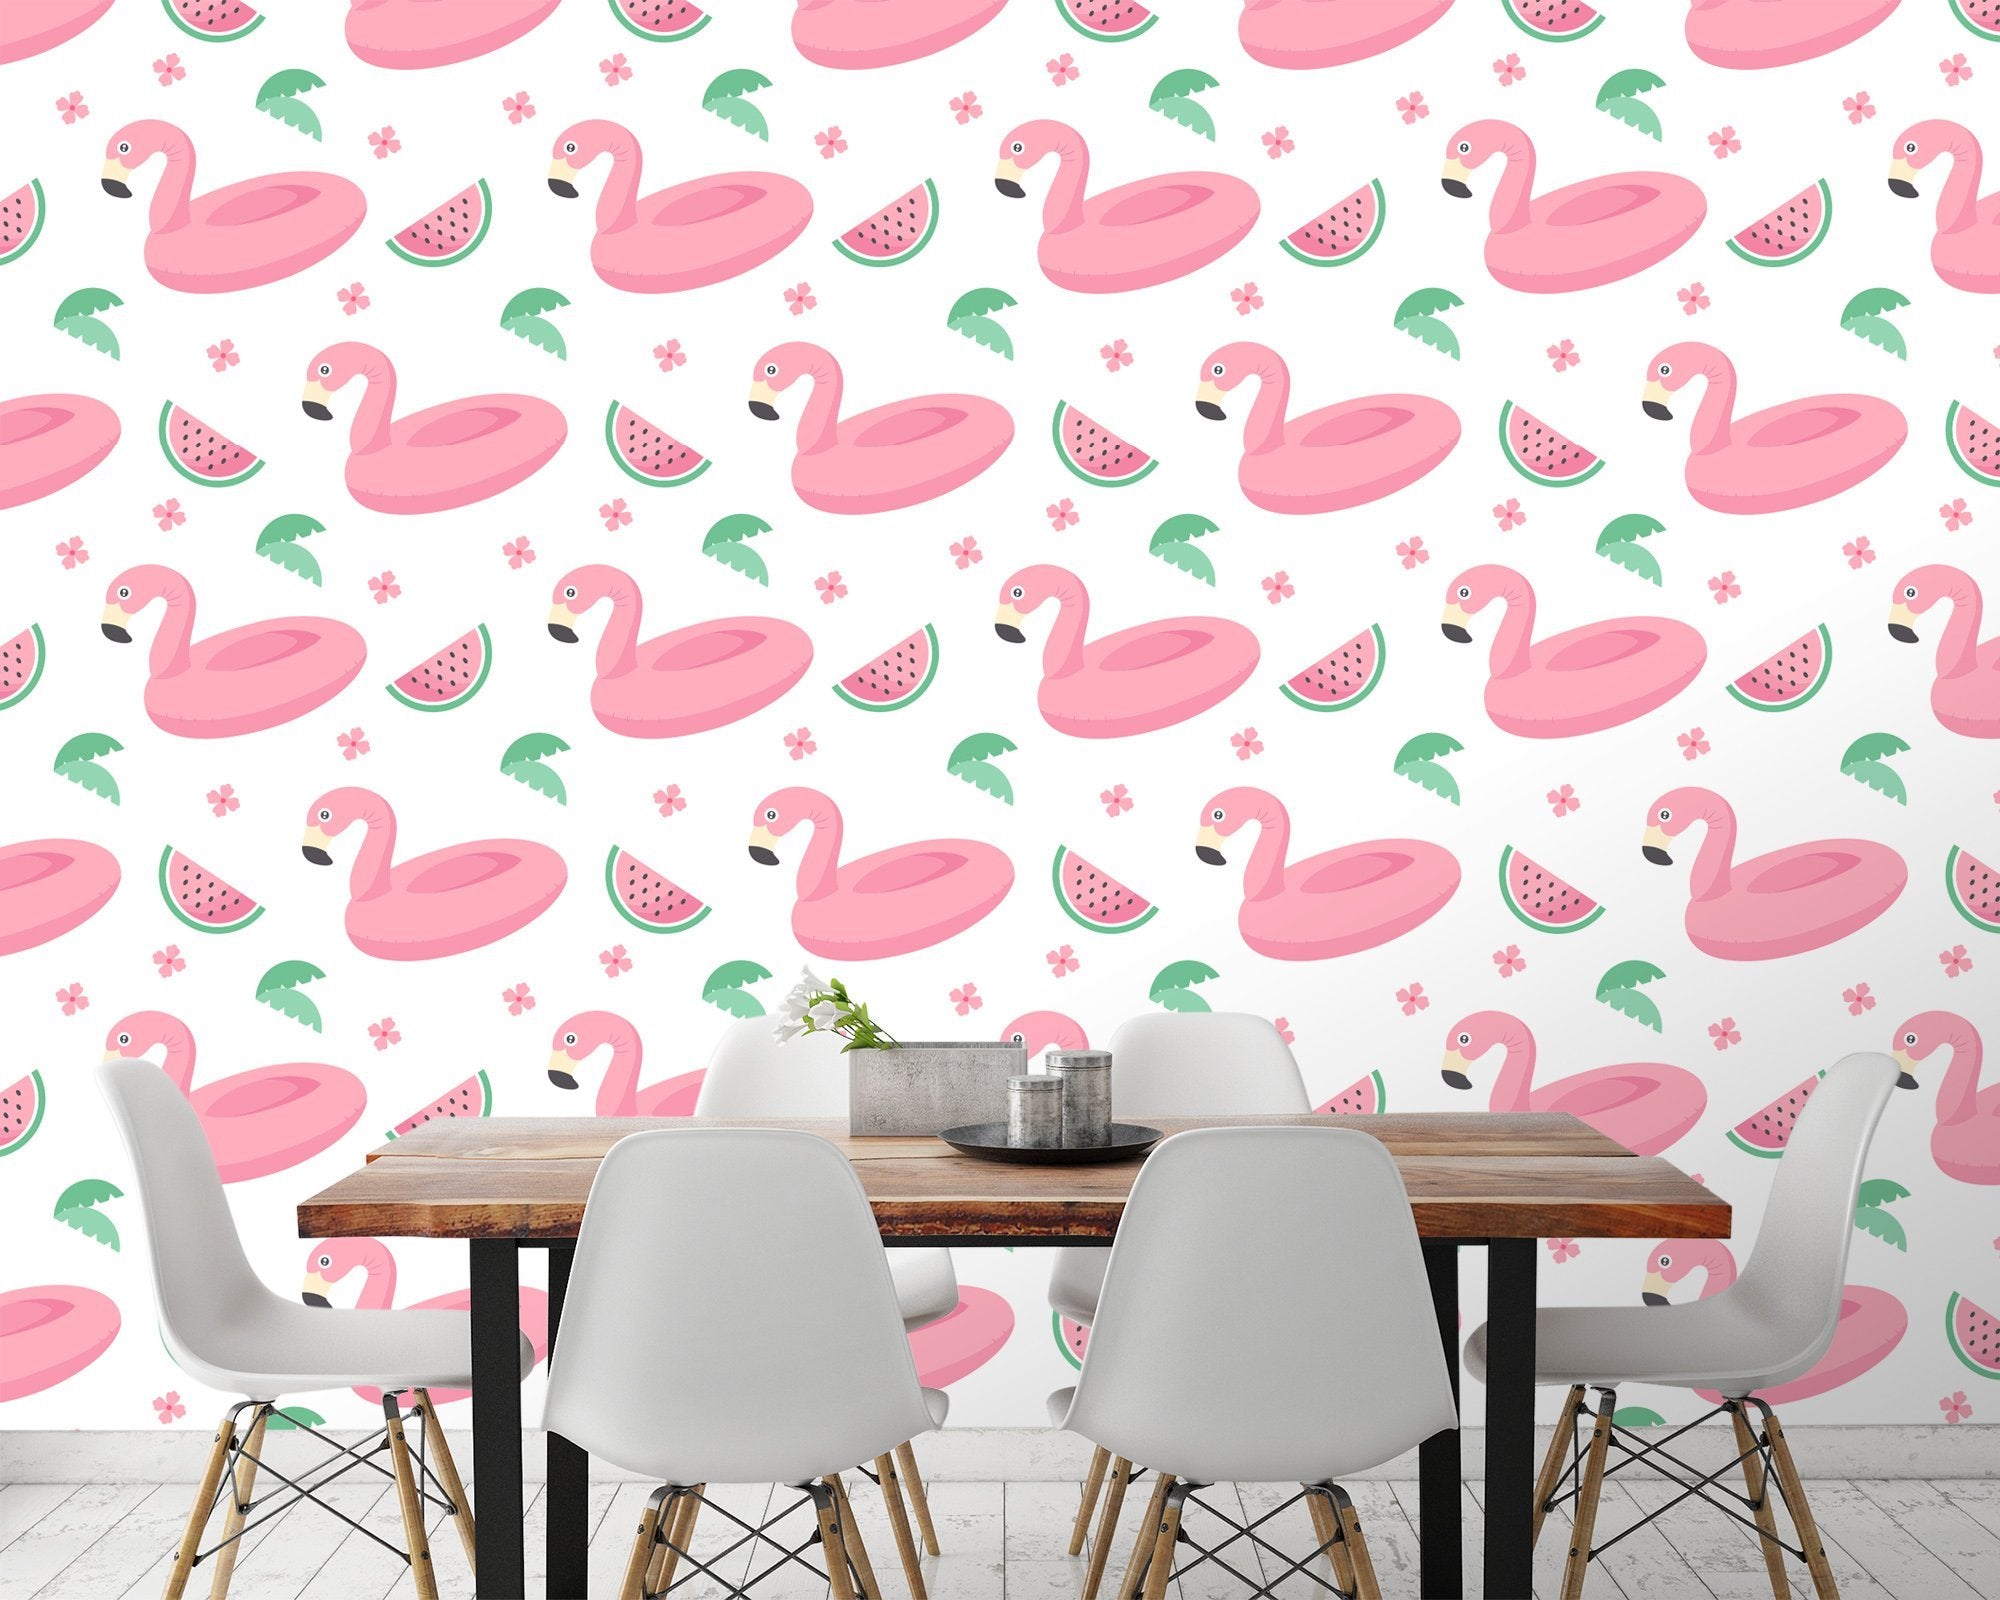 3D Flamingo Swimming Ring 453 Wallpaper AJ Wallpaper 